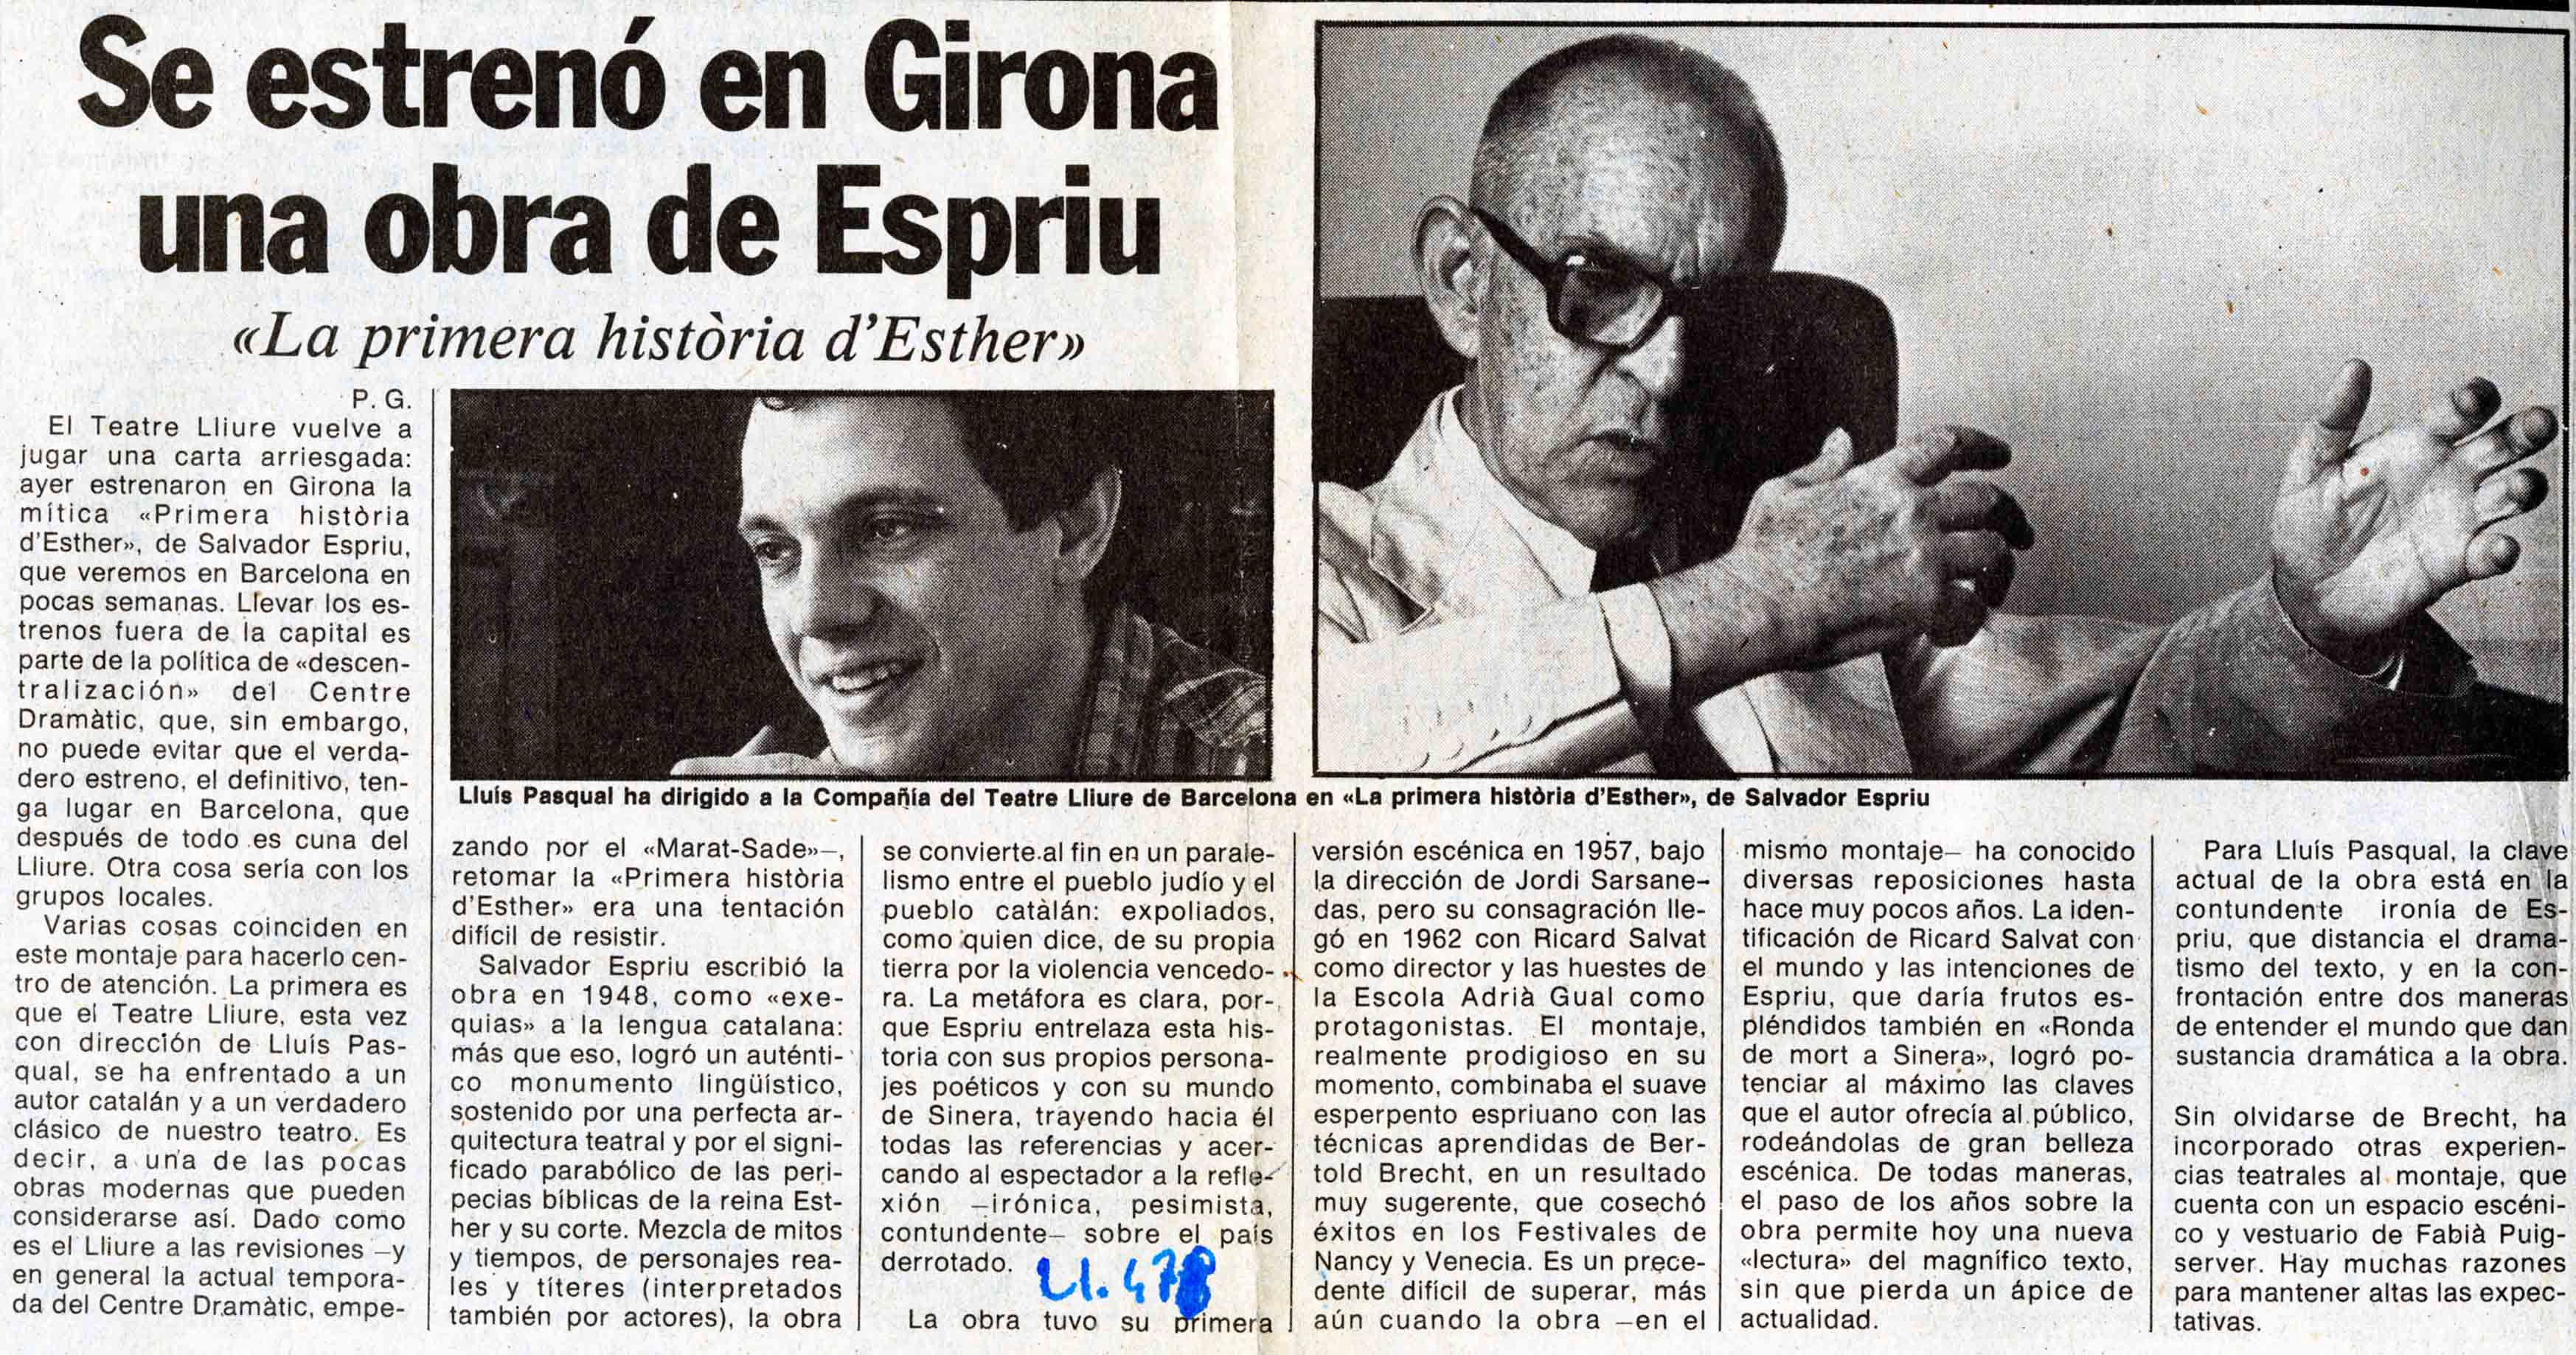 P. G. Se estrenó en Girona una obra de Espriu, 22/05/1982